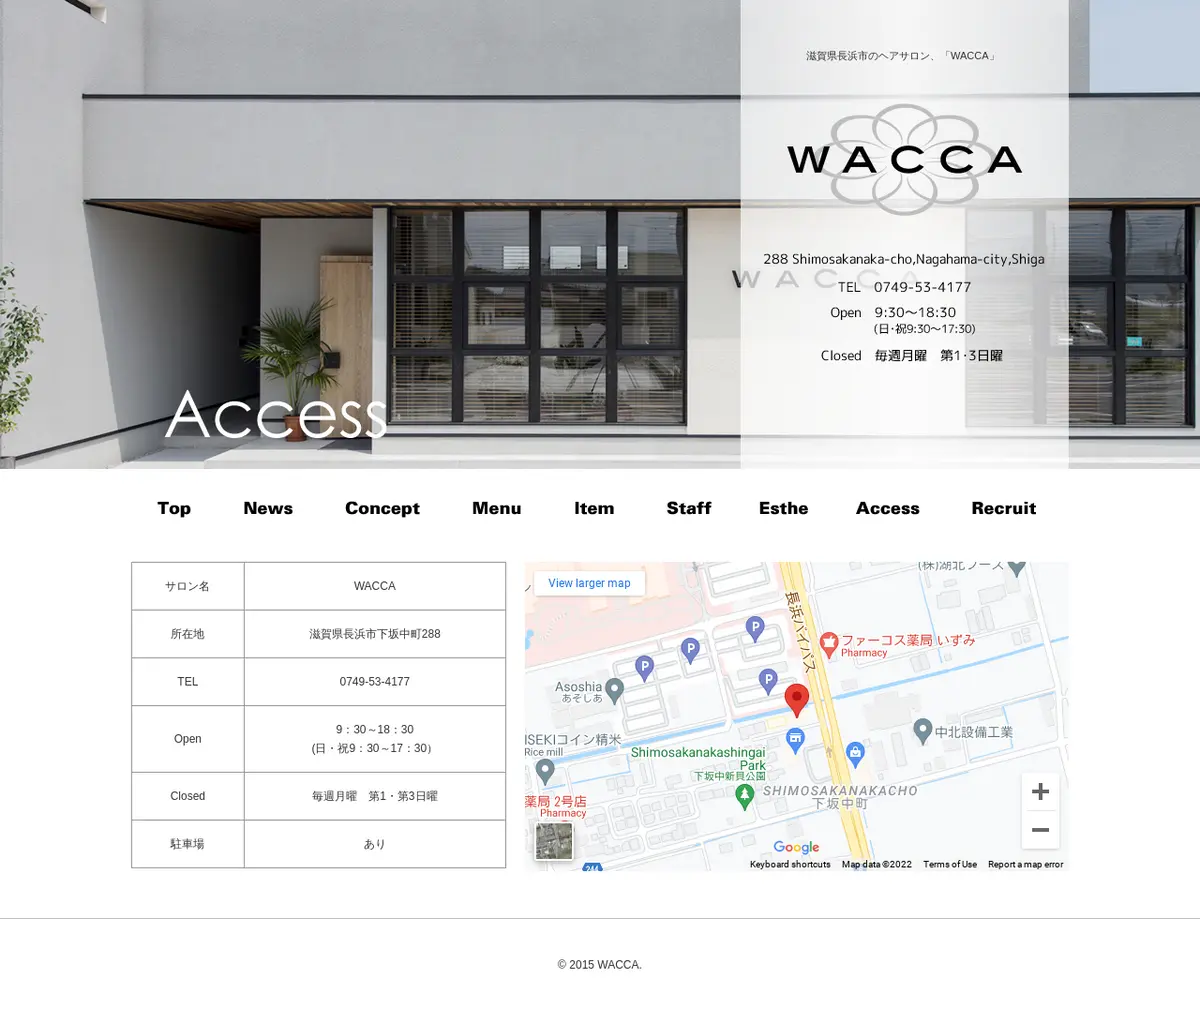 キャプチャ画面 会社名:WACCAプロジェクト名:WACCA 画面名:アクセス・地図・マップ詳細 デバイス名:PCカテゴリ:美容・化粧・エステタグ:アクセス・地図・マップ詳細